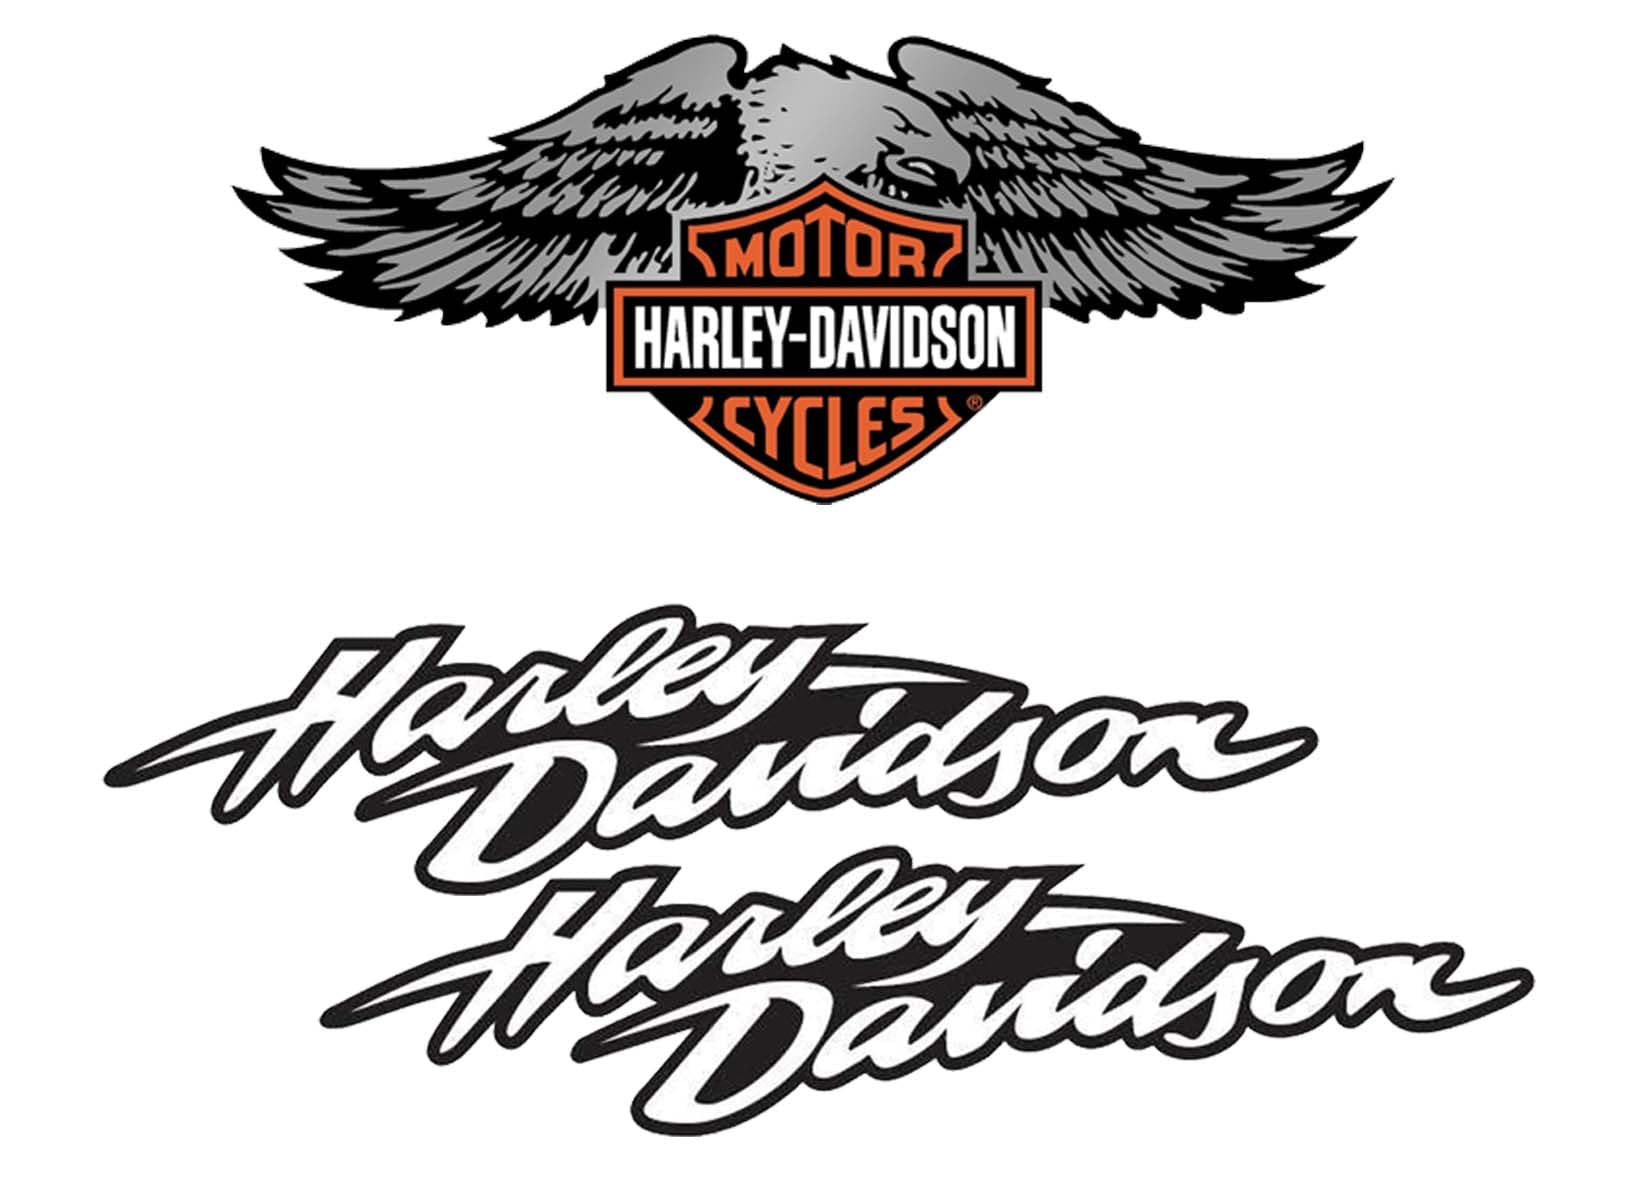 Reflektierende Aufkleber für Motorradhelm, Hommage an Harley Davidson – Pack Adler (3 Aufkleber) von SUPER FABRIQUE